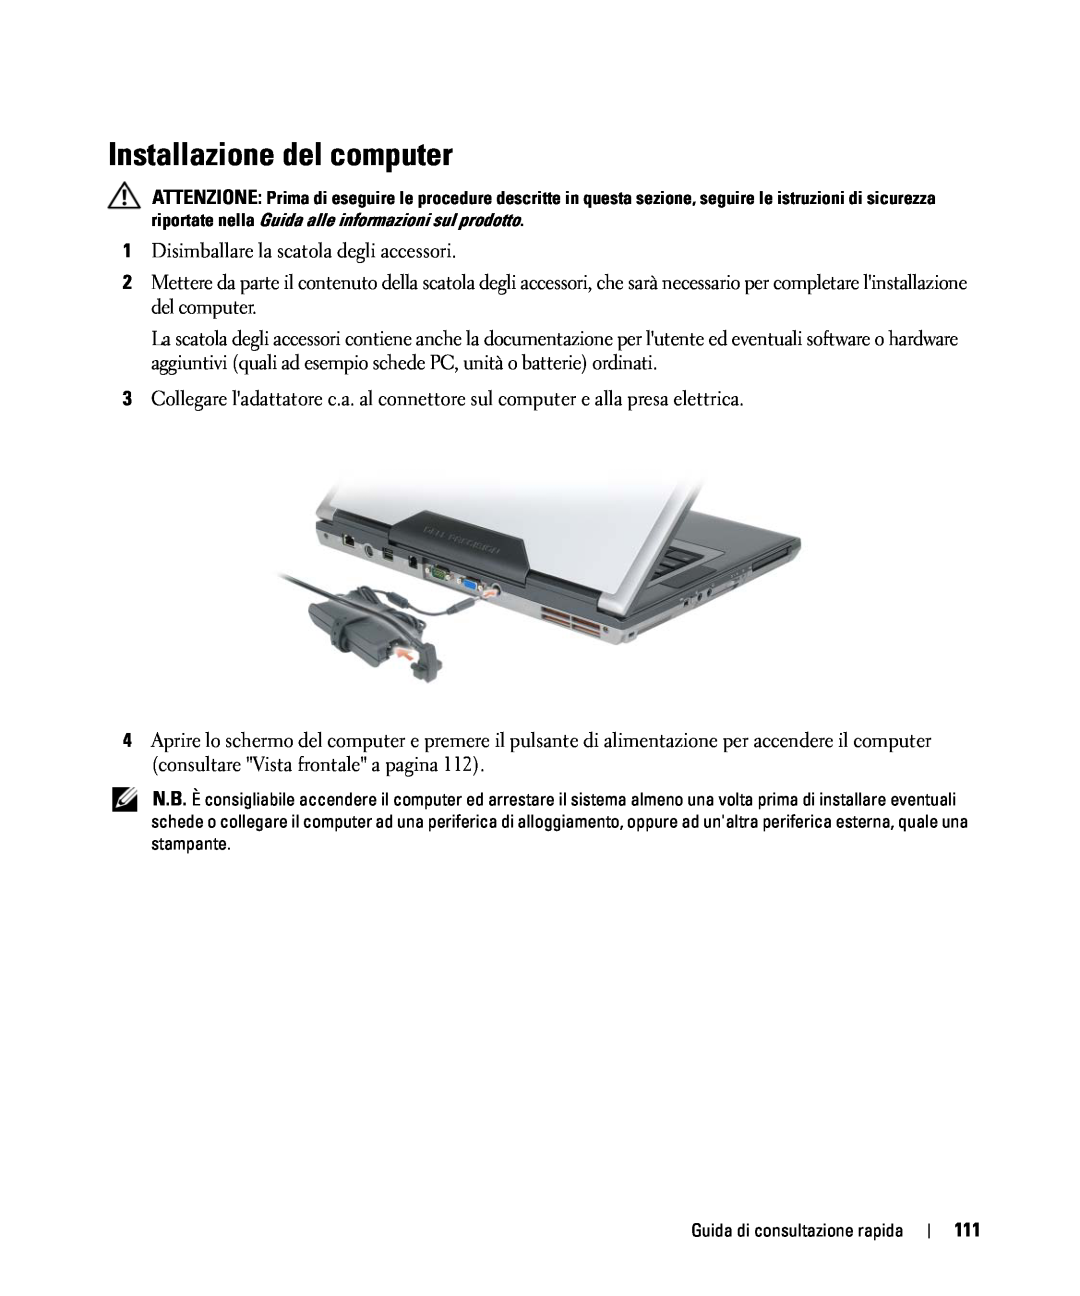 Dell GU806 manual Installazione del computer 